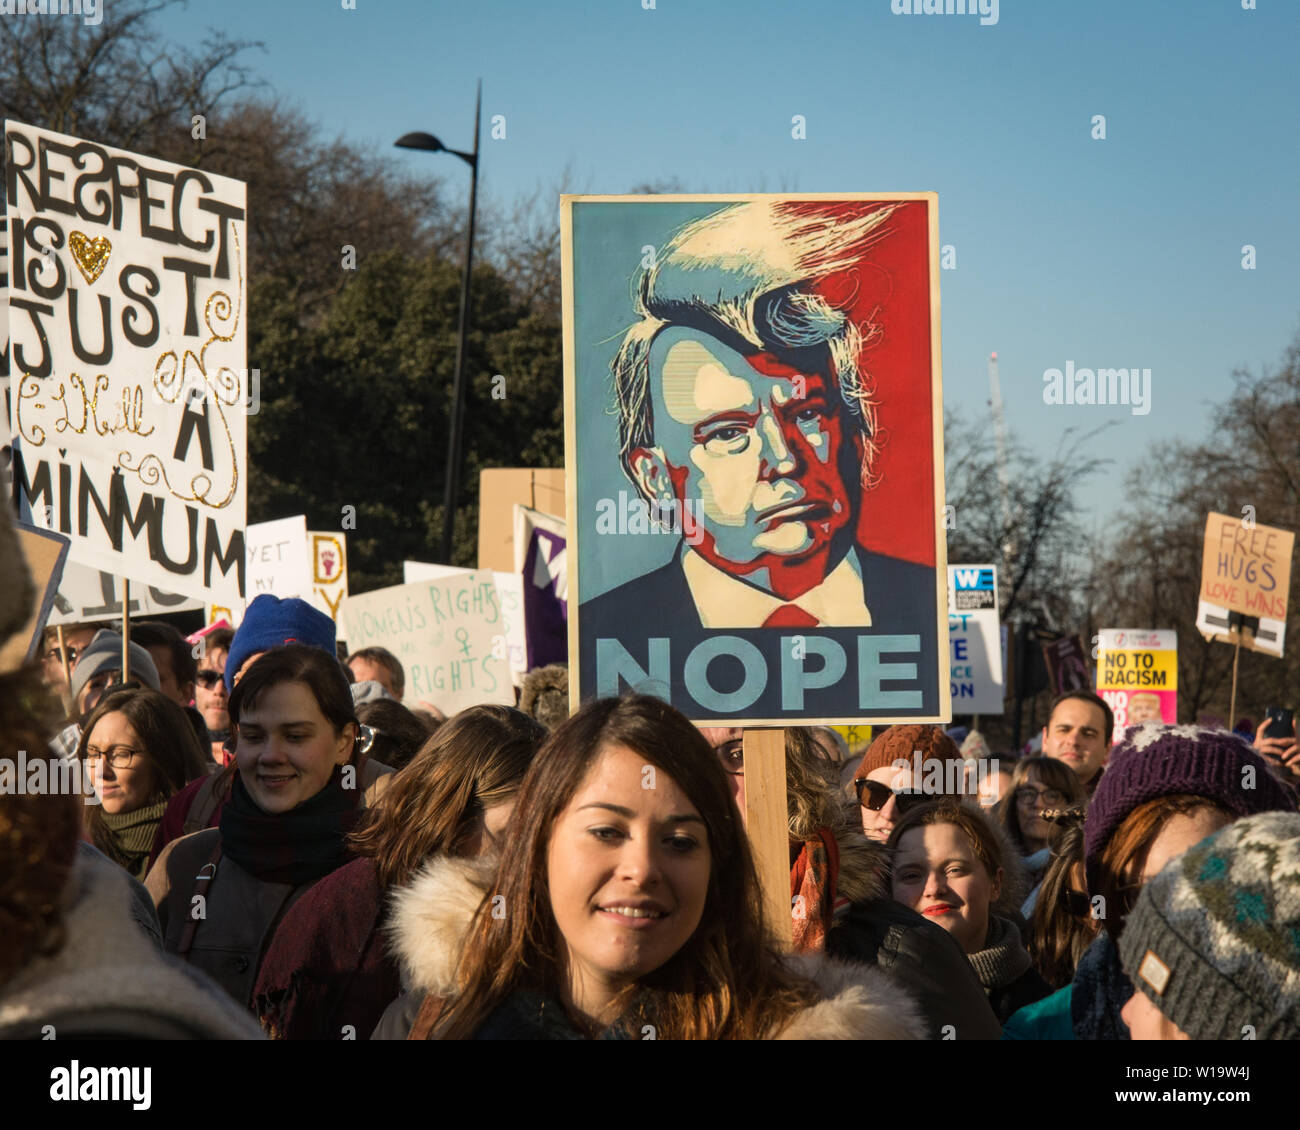 Frauen März, London, UK, 21. Januar 2017. eine Plakette, die auf der legendären Obama "Hoffnung" zu den Präsidentschaftswahlen Plakat zeigen Donald Trump combover weht im Wind mit dem Wort 'Nein', während eines Protestes in London am Tag nach der Amtseinführung von Präsident Donald Trump. Bis zu 10.000 nahmen an London als Frauen weltweit den Tag marschieren in einem Akt der internationalen Solidarität gekennzeichnet. Viele durchgeführt Plakate verweisen auf Aussagen von Donald Trump, als von vielen als anti-Frauen oder anderweitig anstößig. Stockfoto